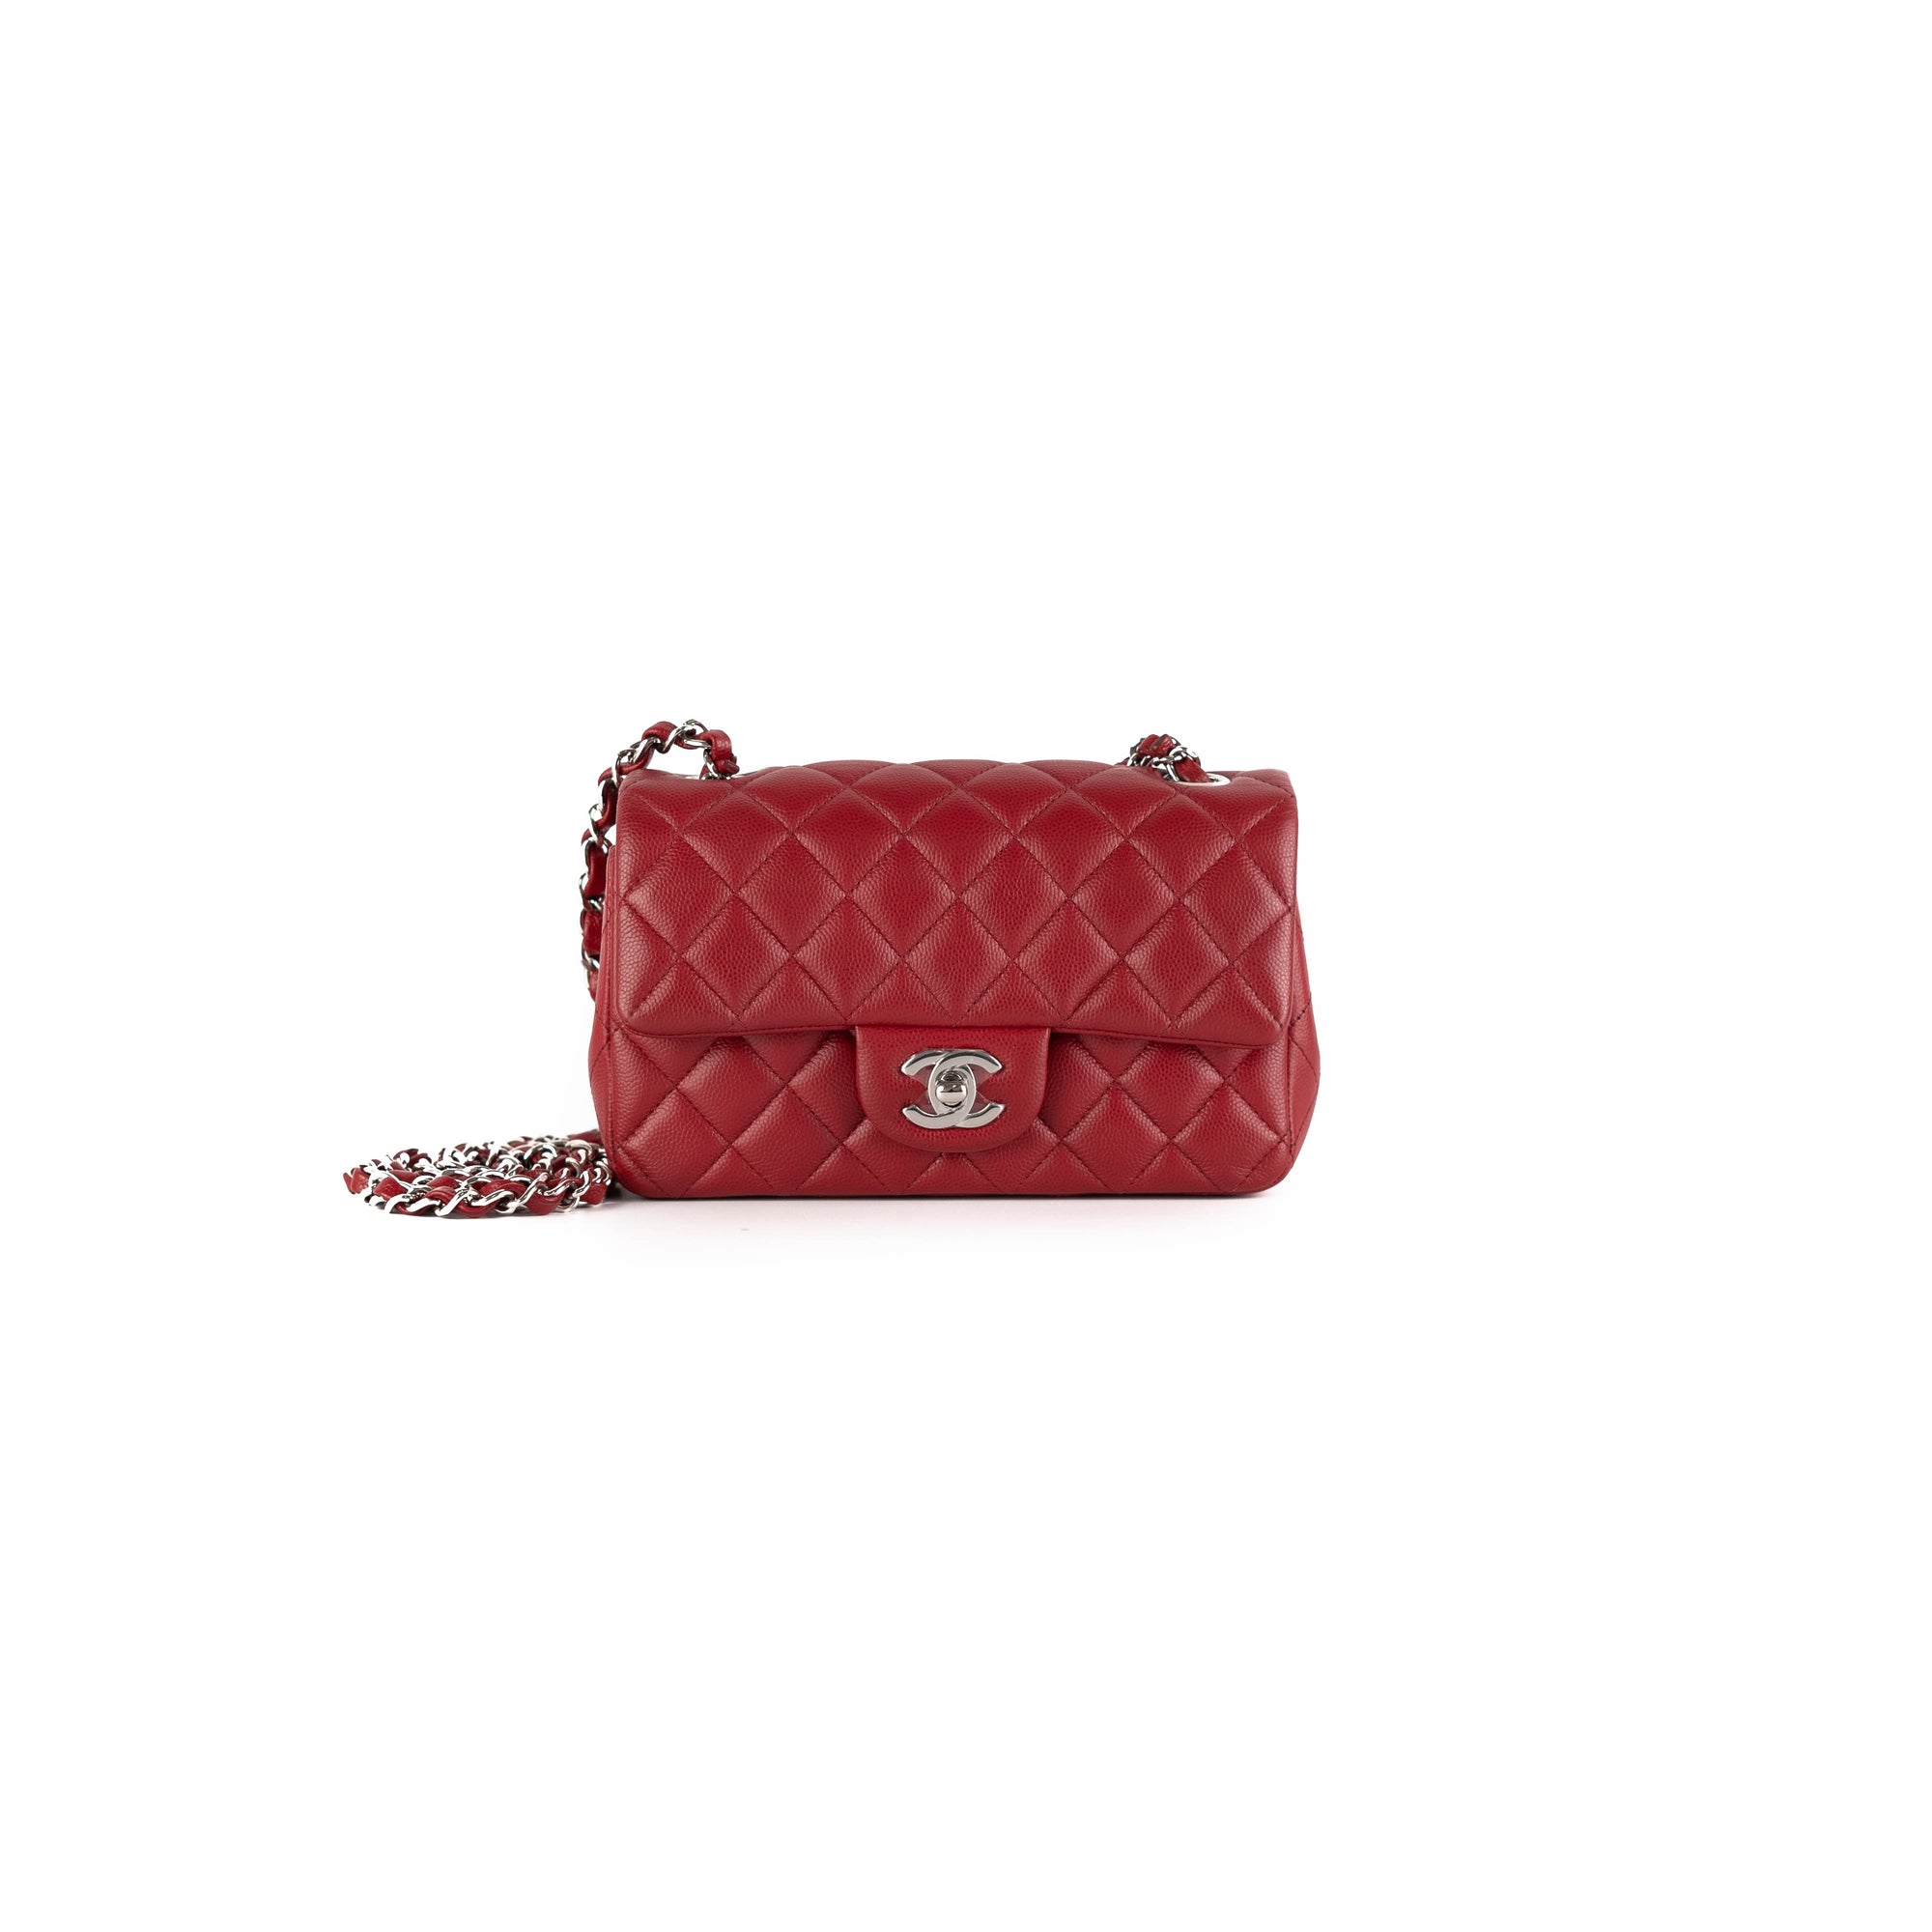 Chanel Caviar Rectangular Mini Bag Red - The Purse Affair